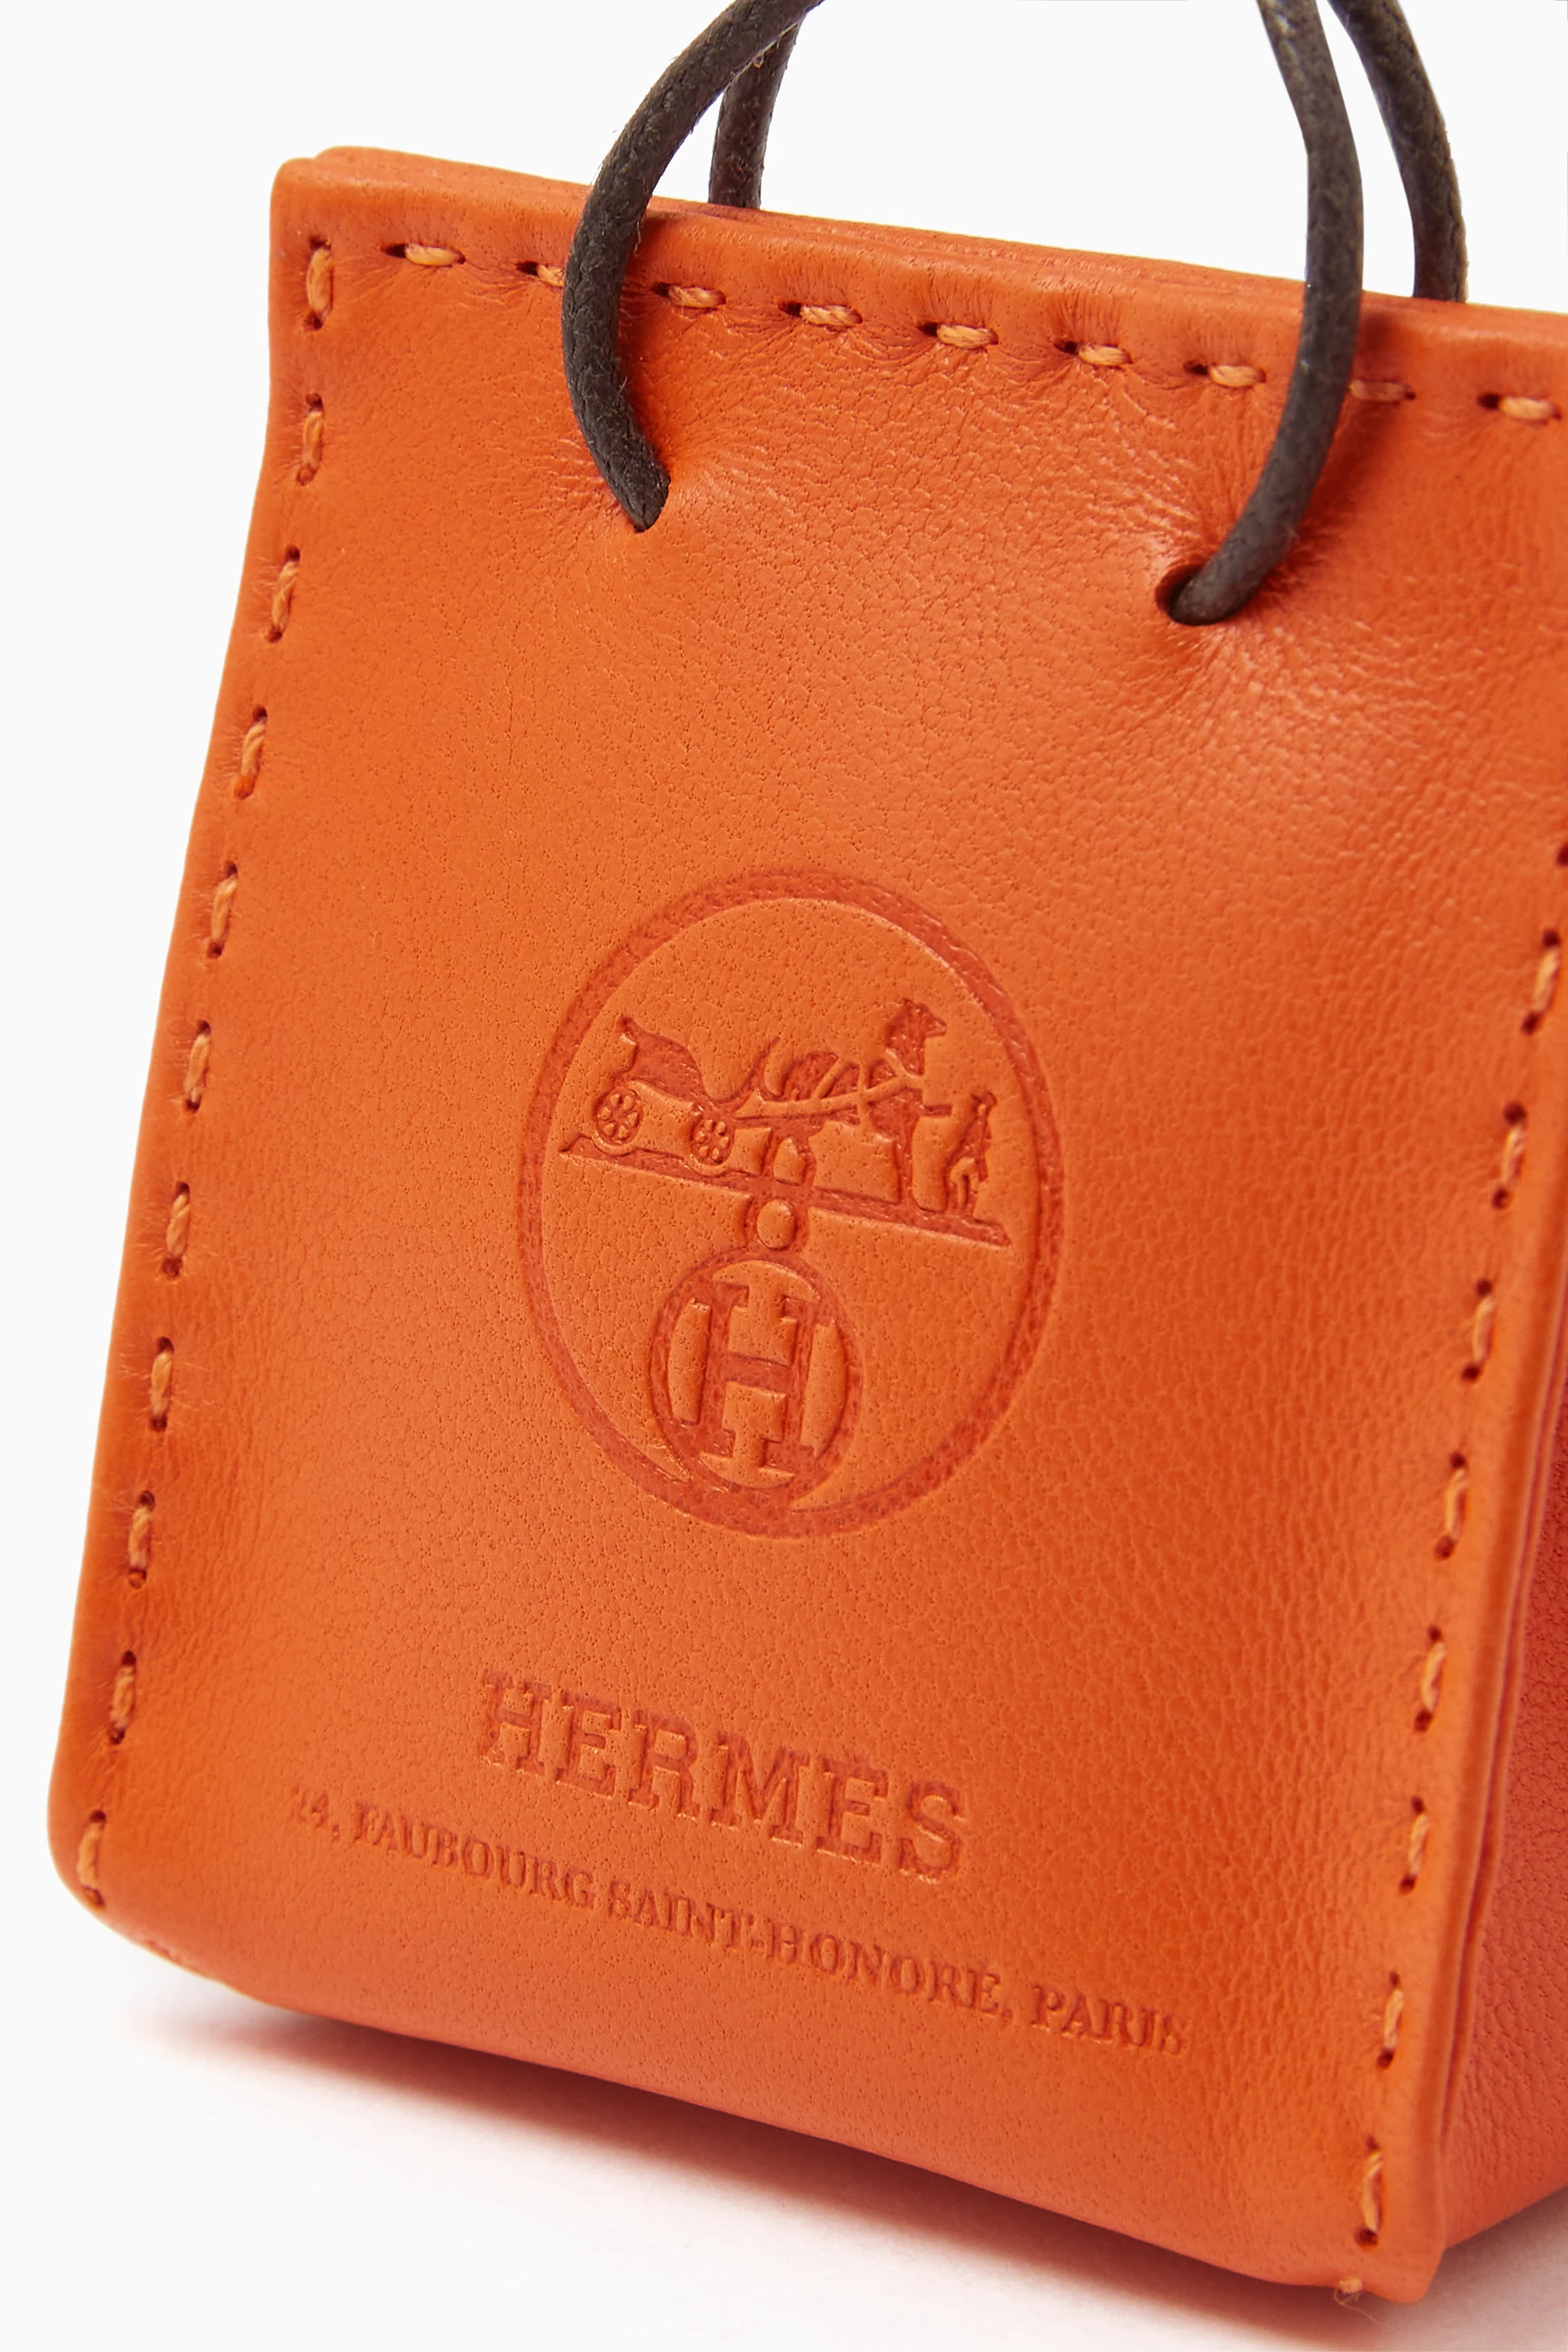 Hermès Feu Milo Lambskin and Gold Swift Orange Bag Charm (Like New)